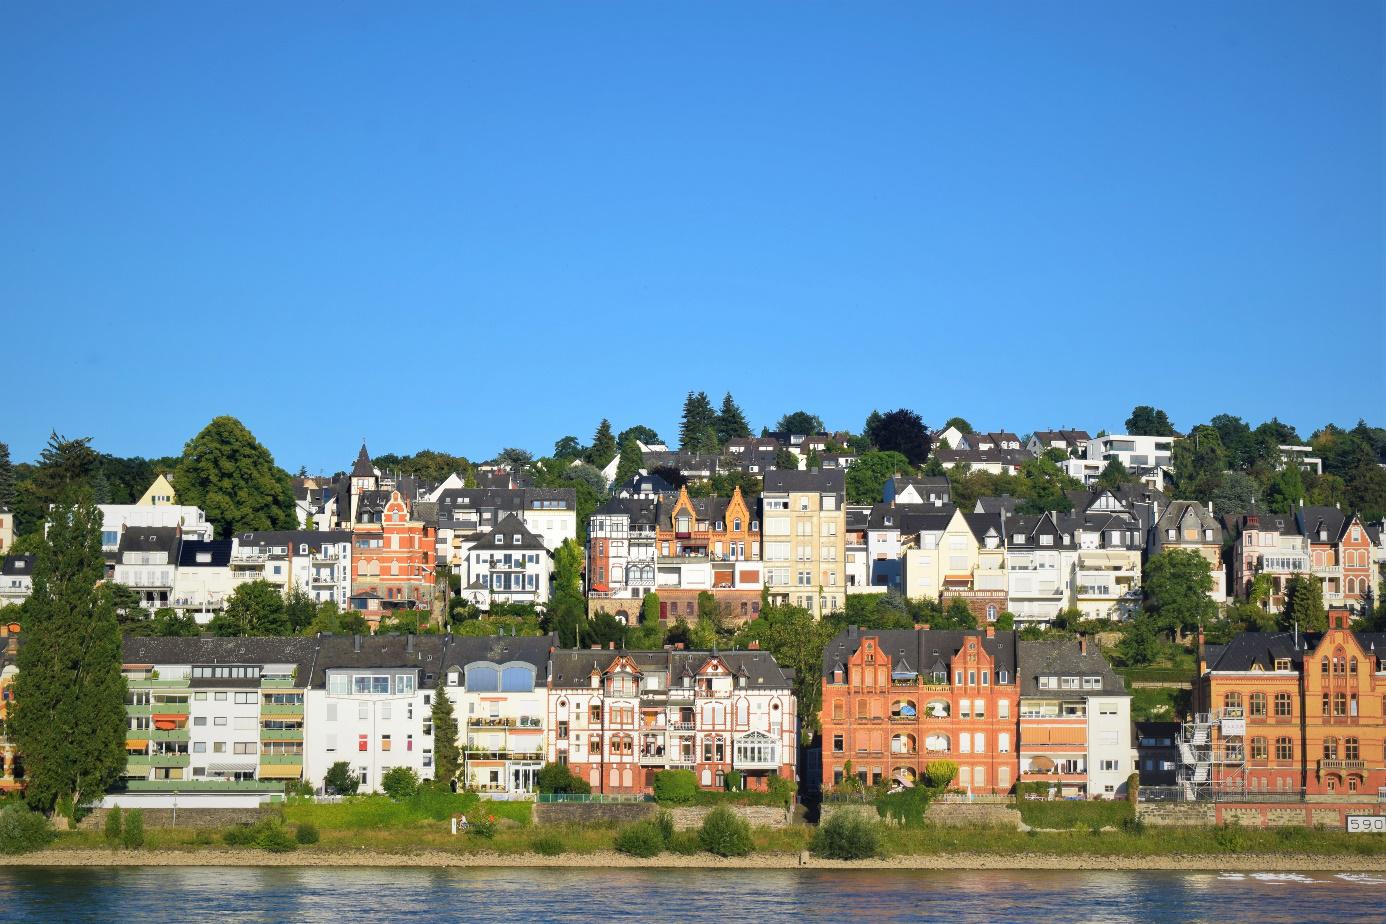 Bild: Koblenz, sonniger Nachmittagsblick auf die Immobilien